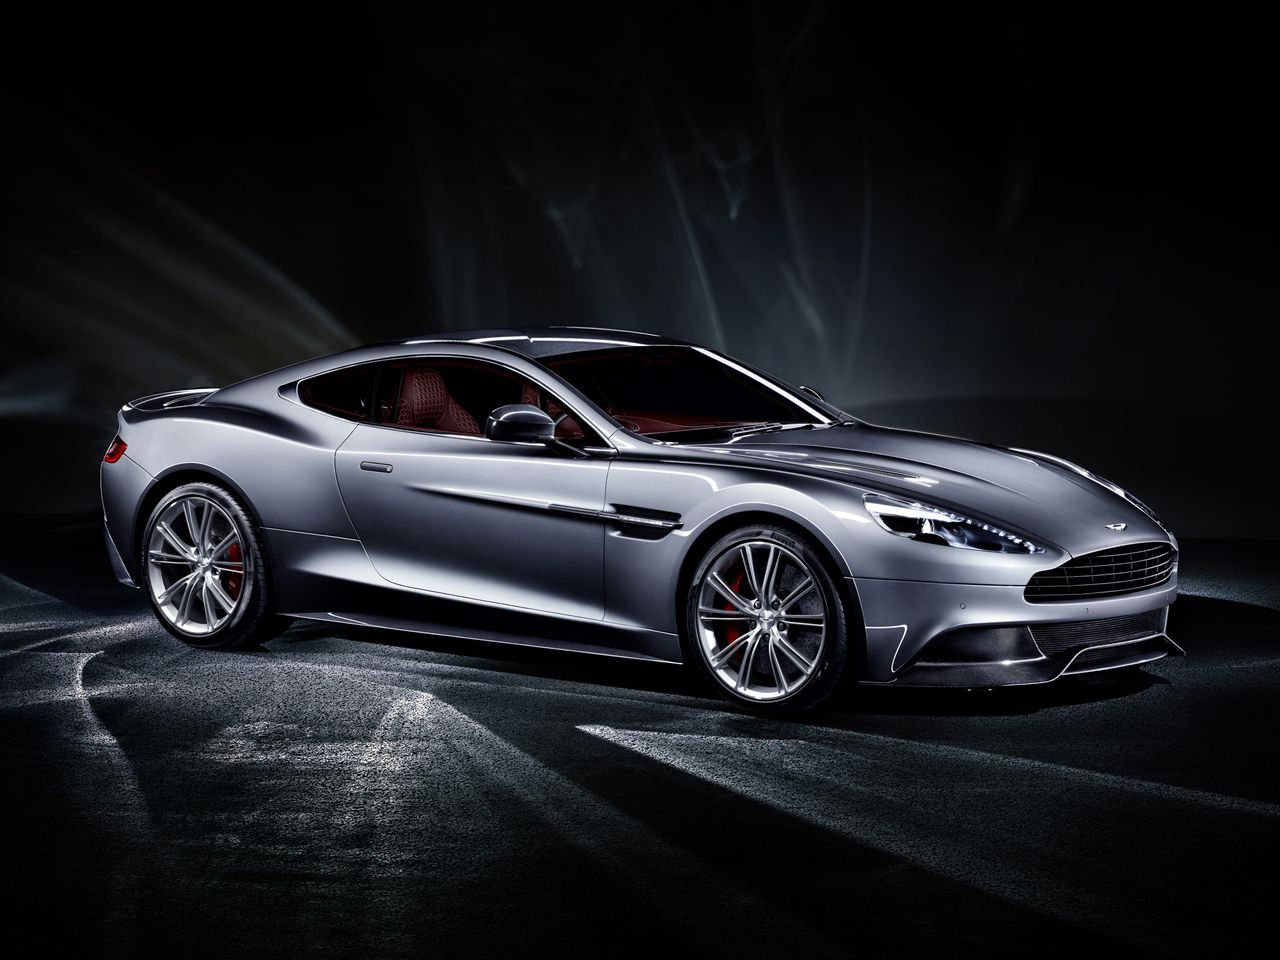 Duża moc Astona Martina pozwala rozpędzić auto do 100 km/h w 3,8 s. Prędkość maksymalna wynosi 295 km/h (jest ograniczona elektronicznie).